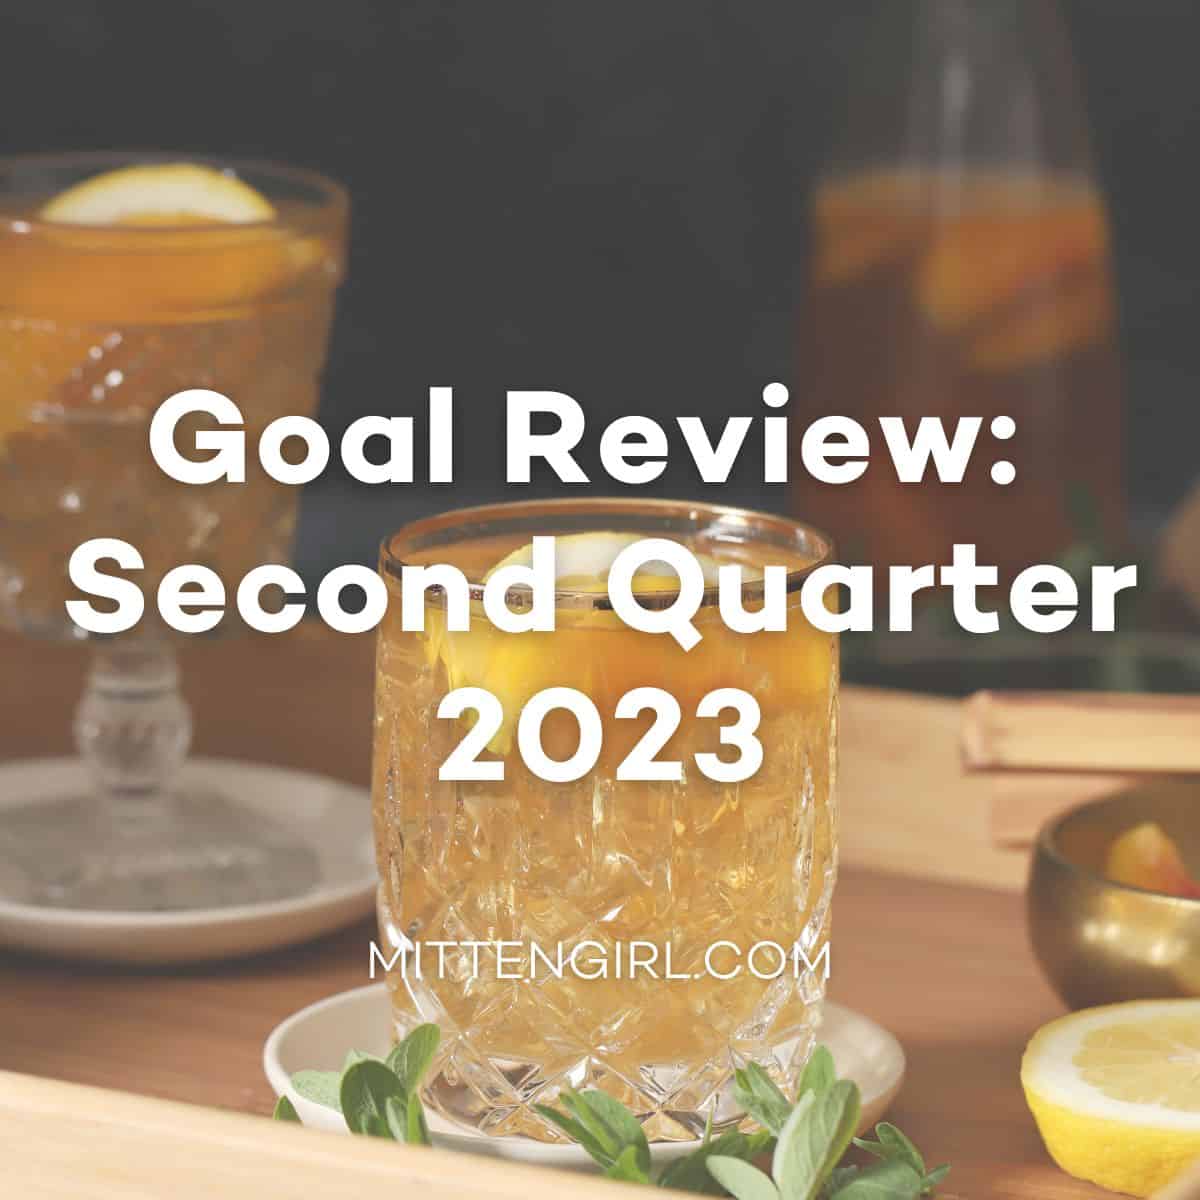 Goal Review: Second Quarter 2023